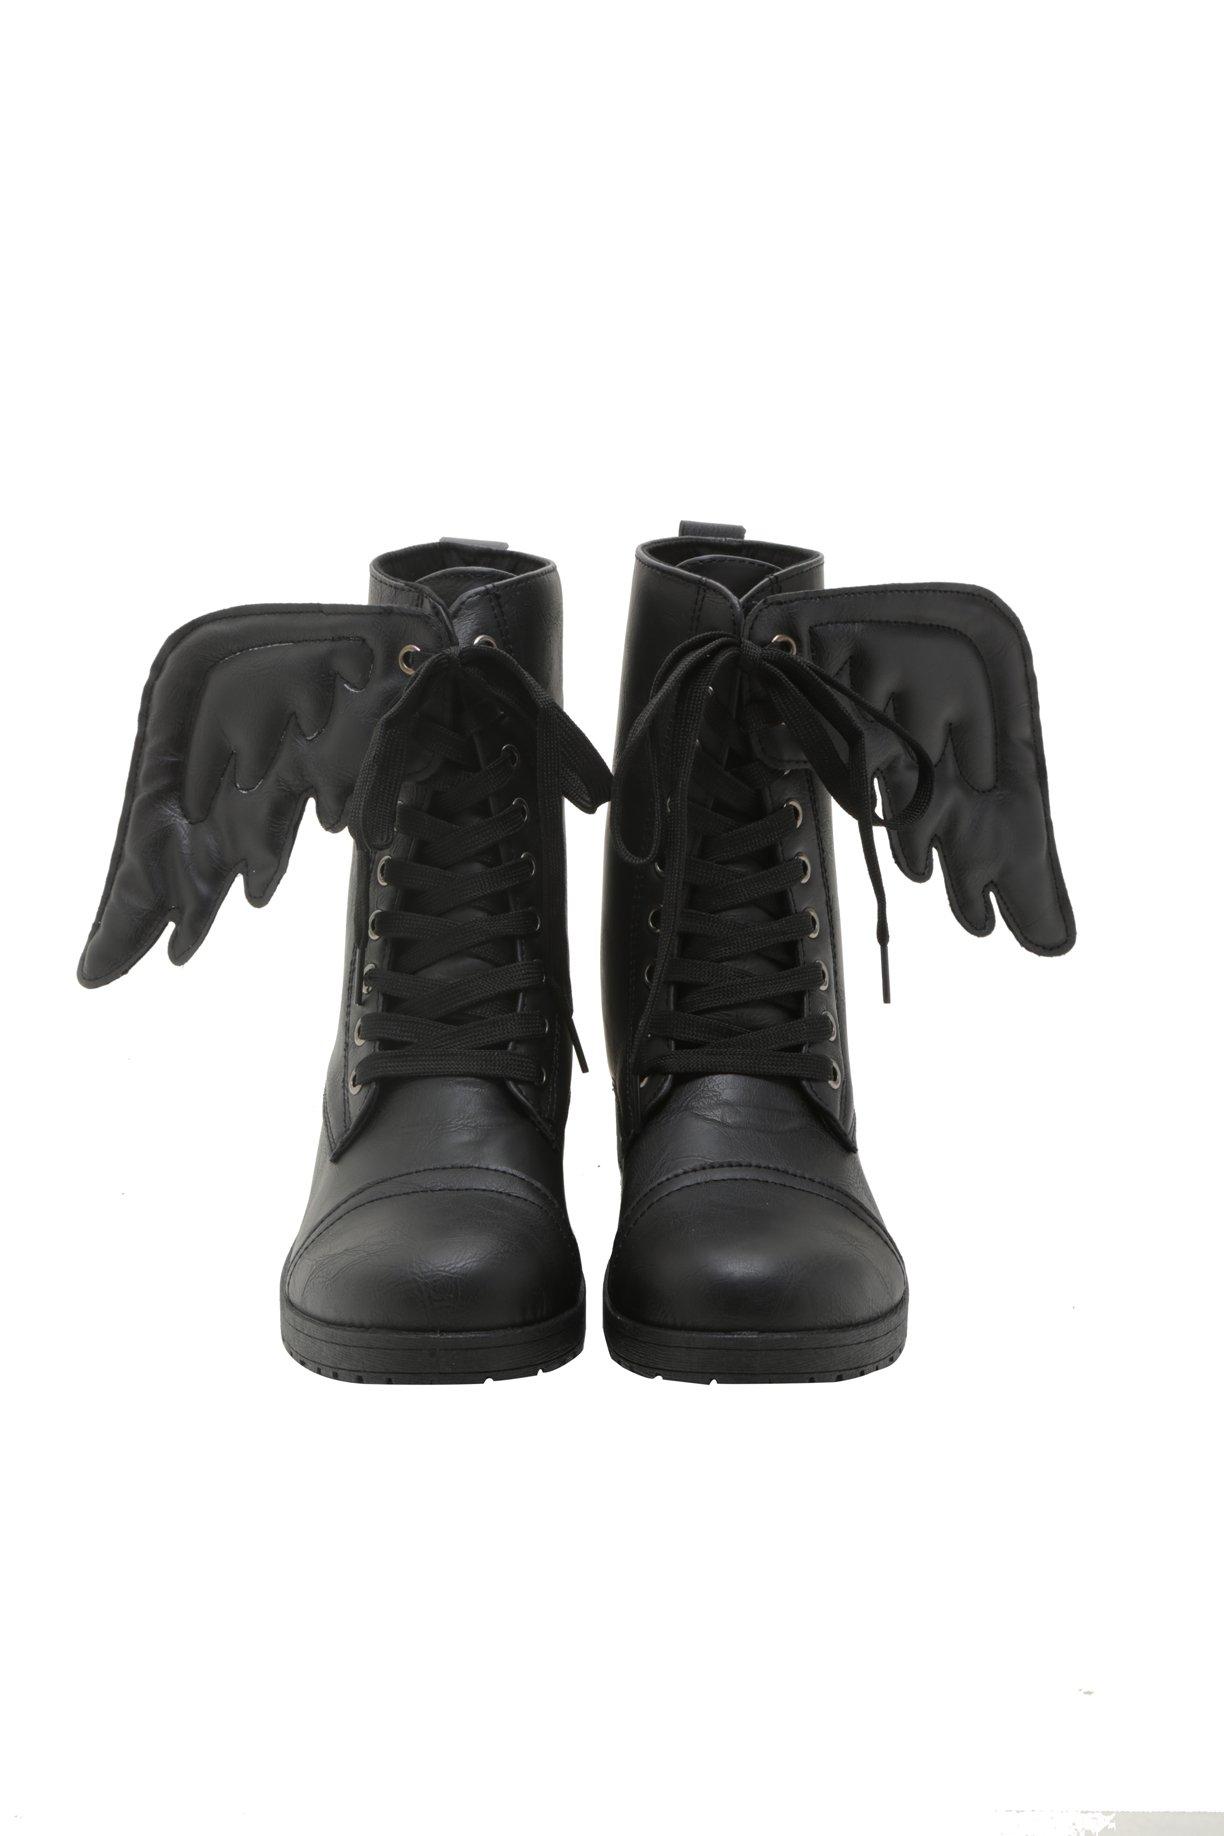 Supernatural Castiel Wing Combat Boots, , alternate